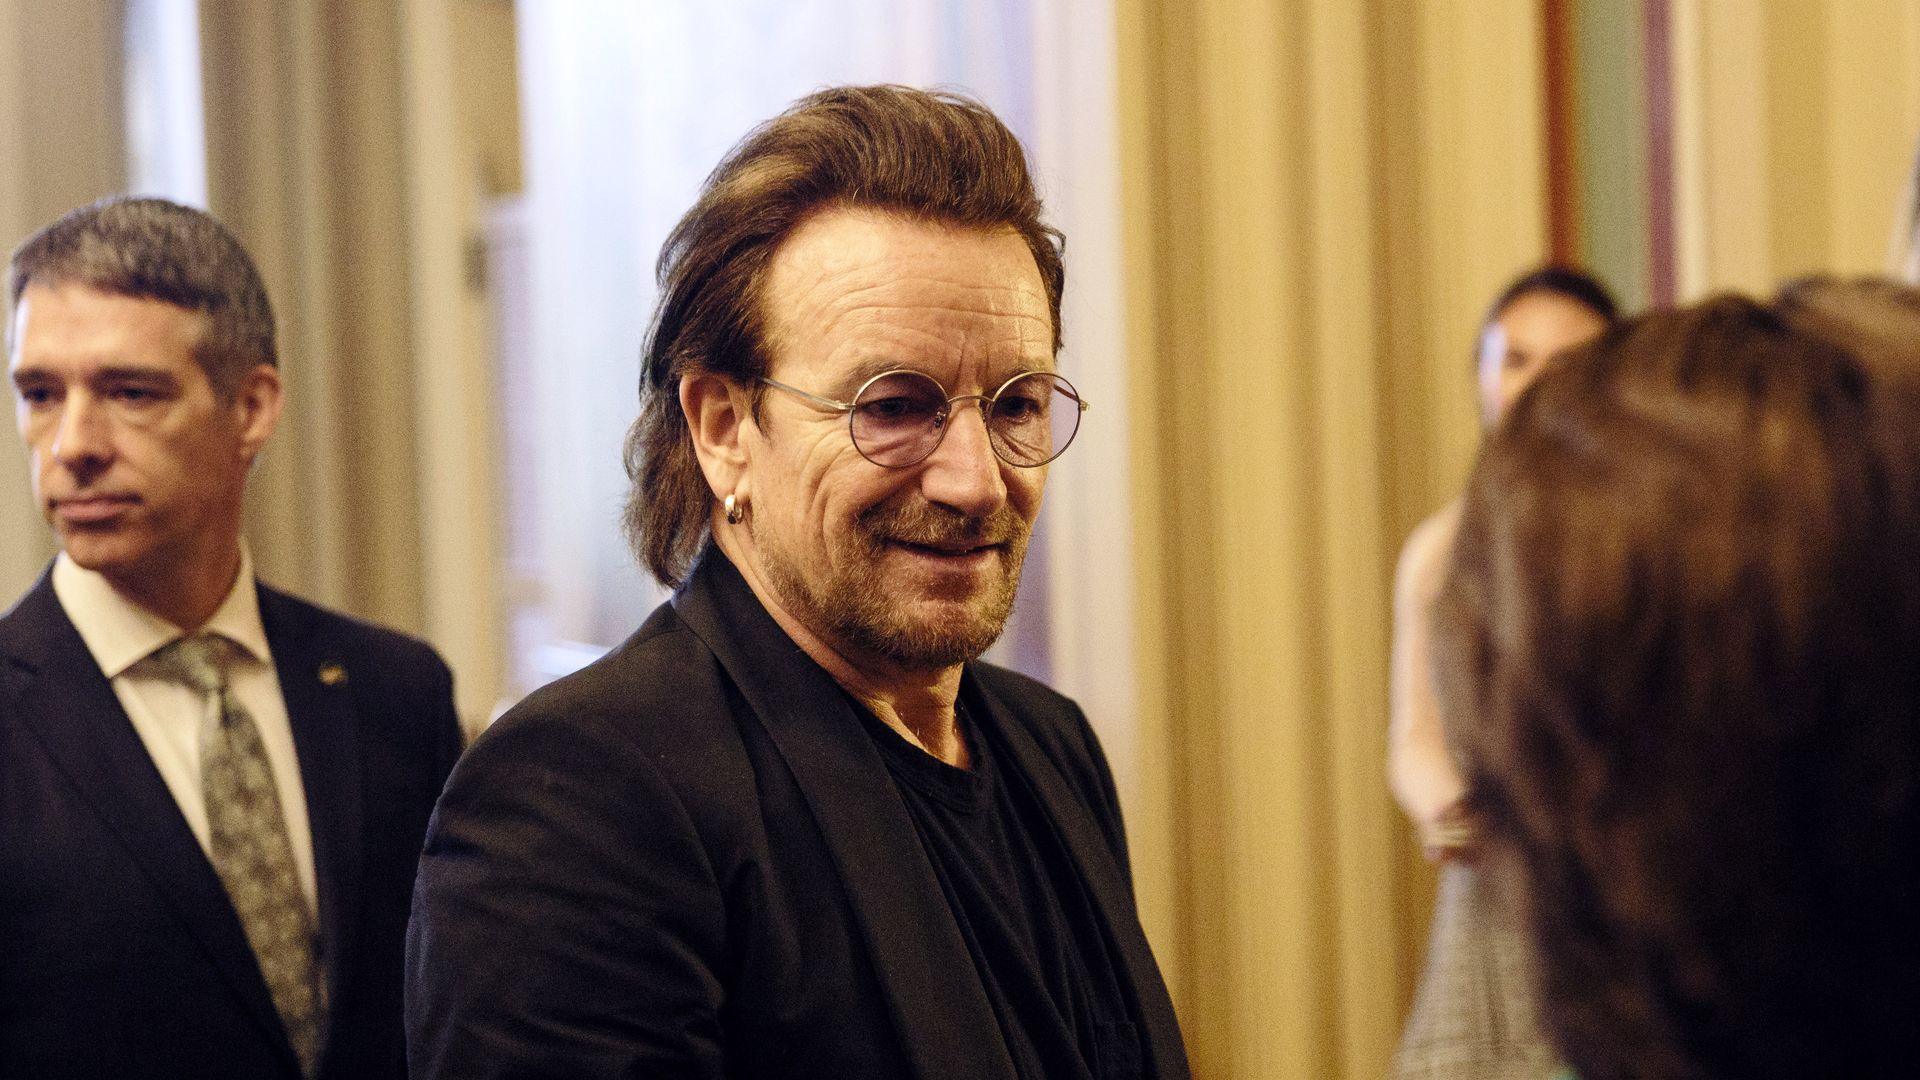 U2 frontman Bono at Capitol Hill